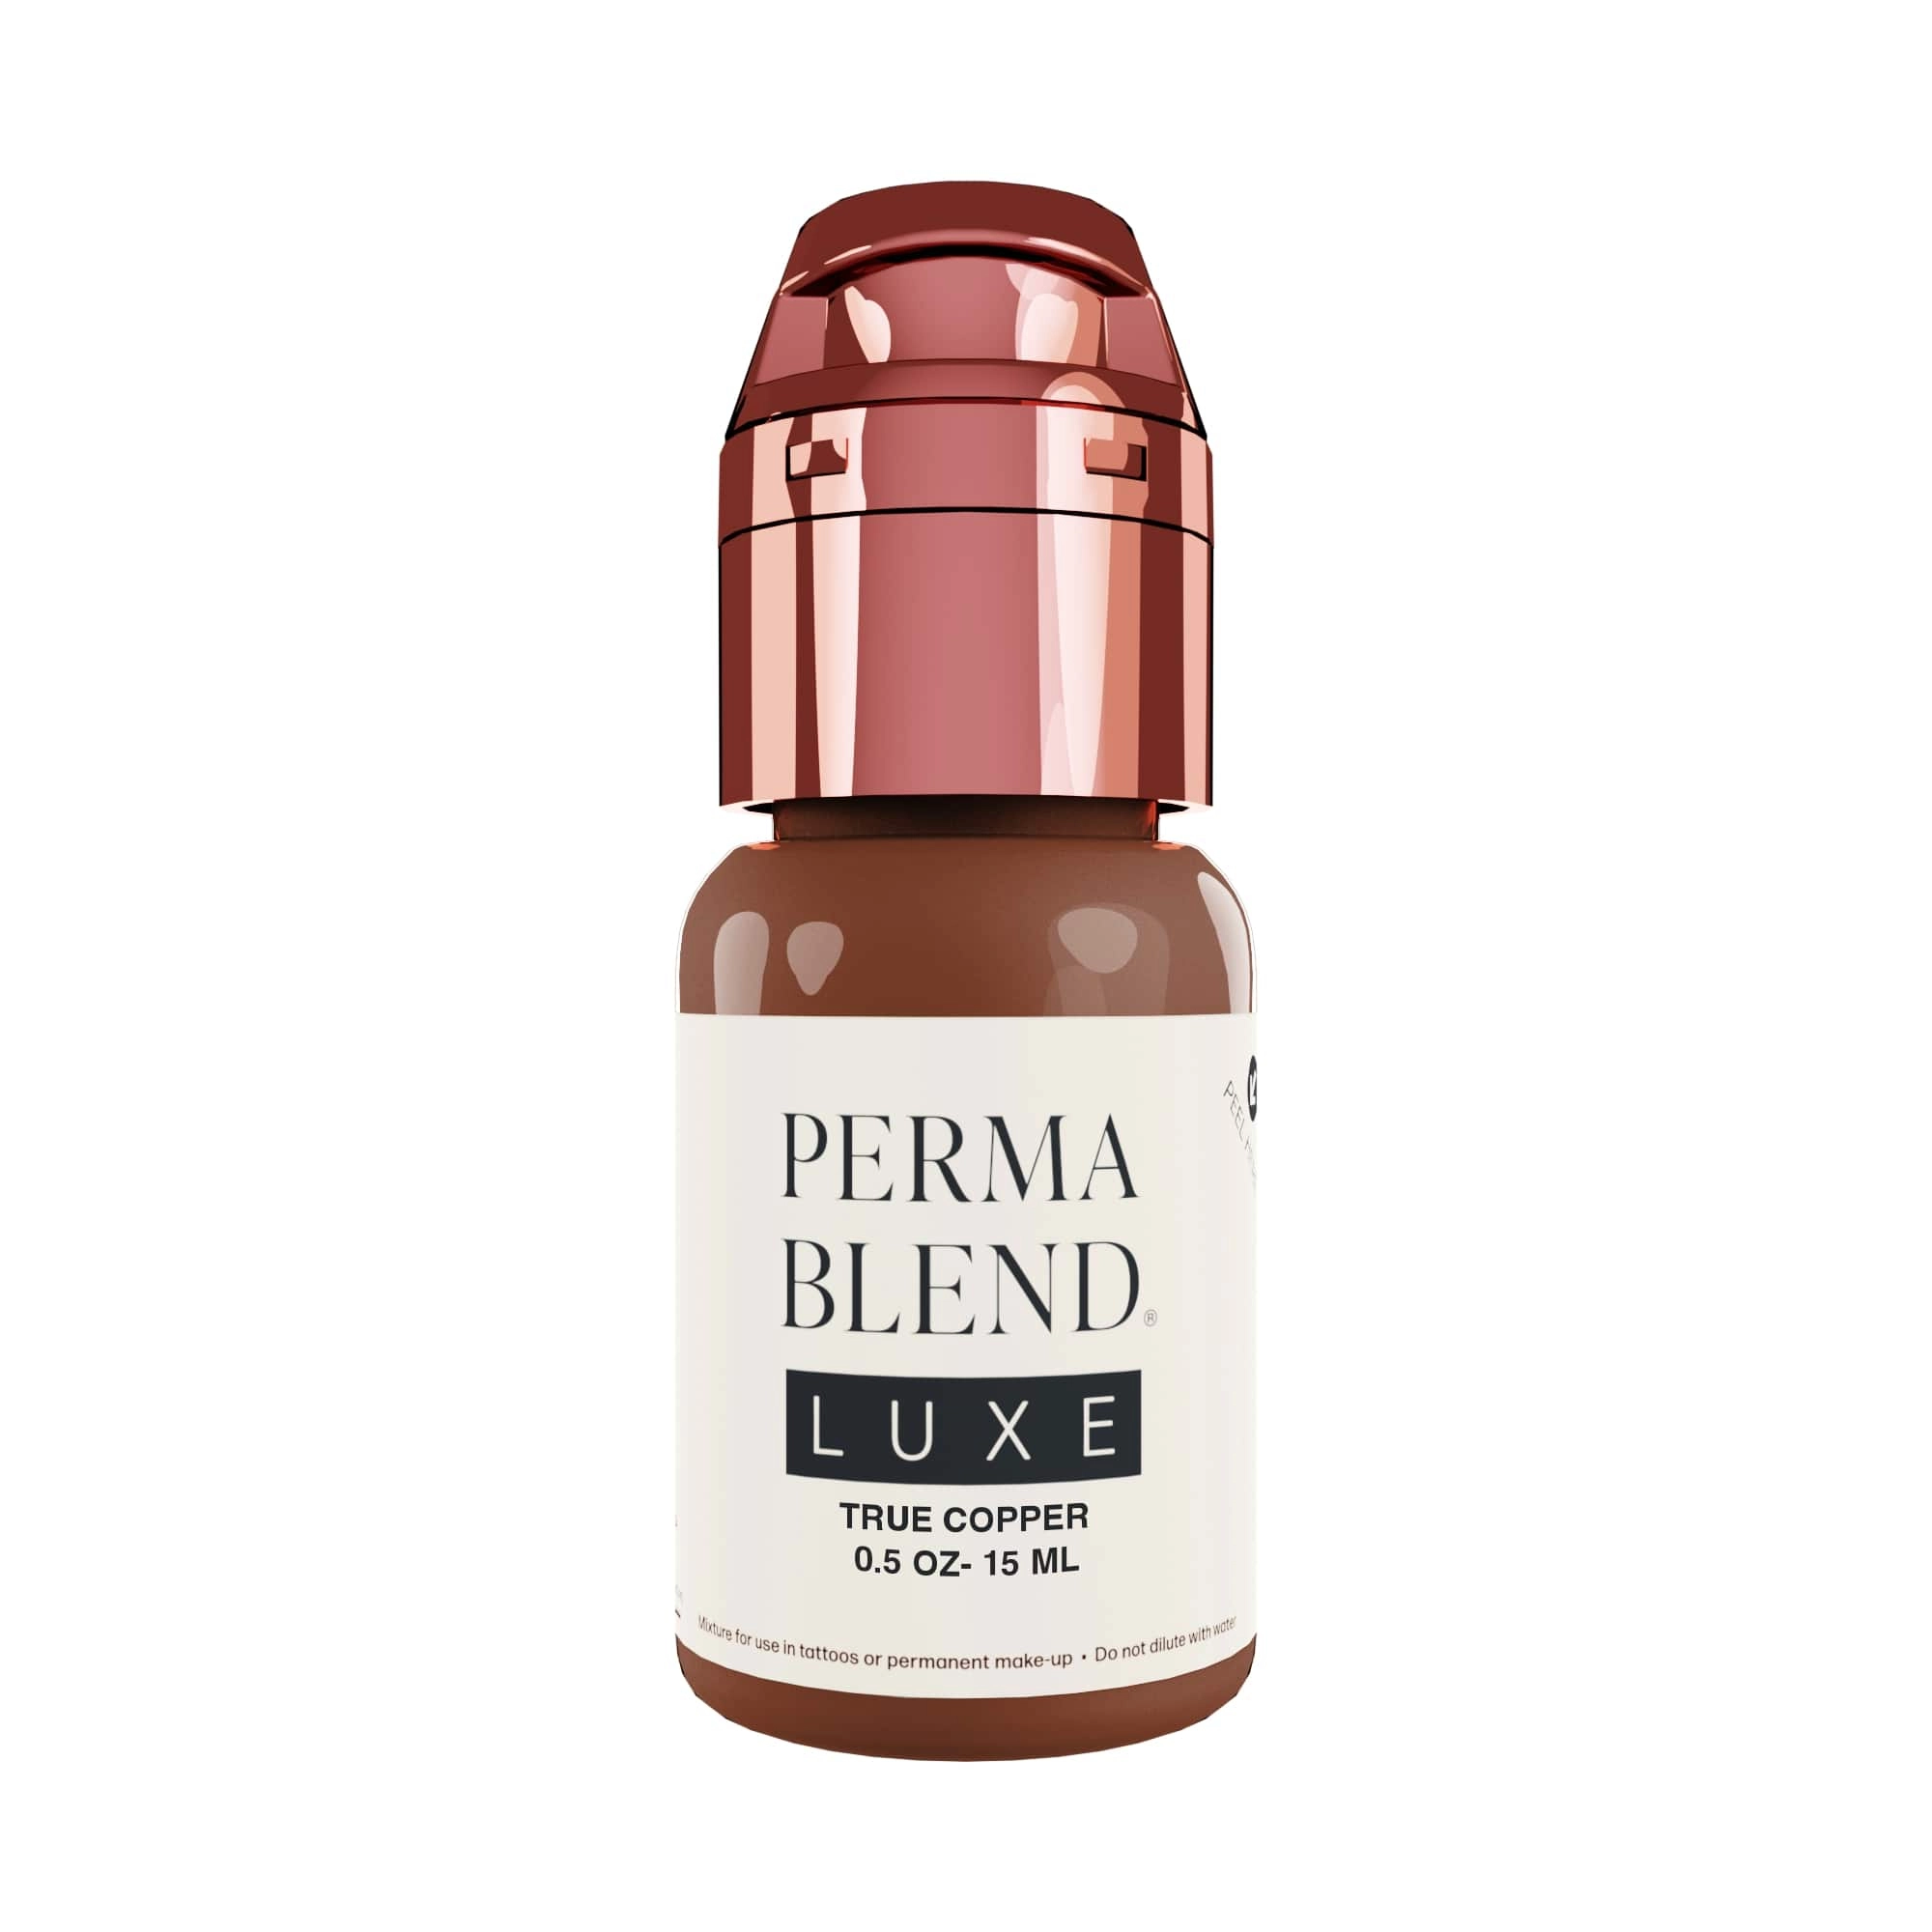 Perma Blend Luxe PMU Pigment - True Copper (15 ml)